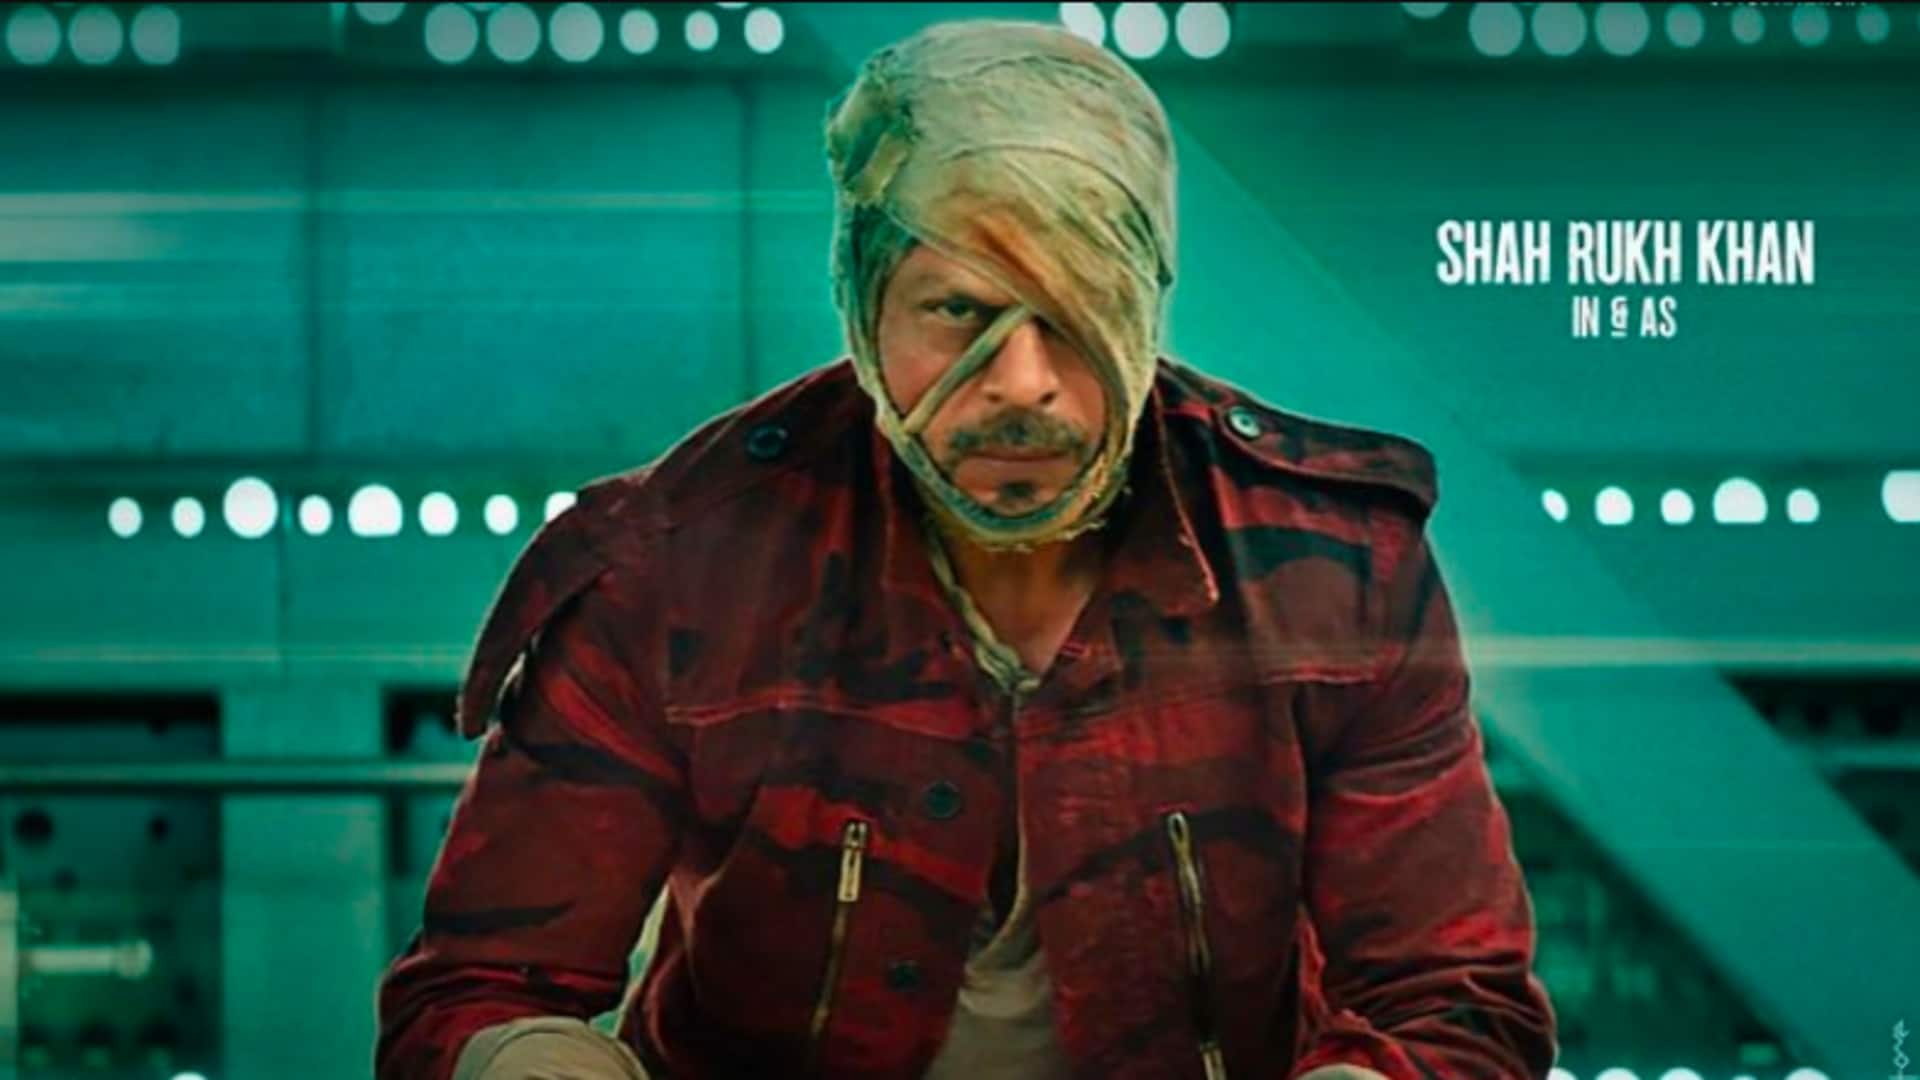 'जवान': शाहरुख खान और संजय दत्त बड़े एक्शन सीन के लिए आए साथ, जल्द होगी शूटिंग 